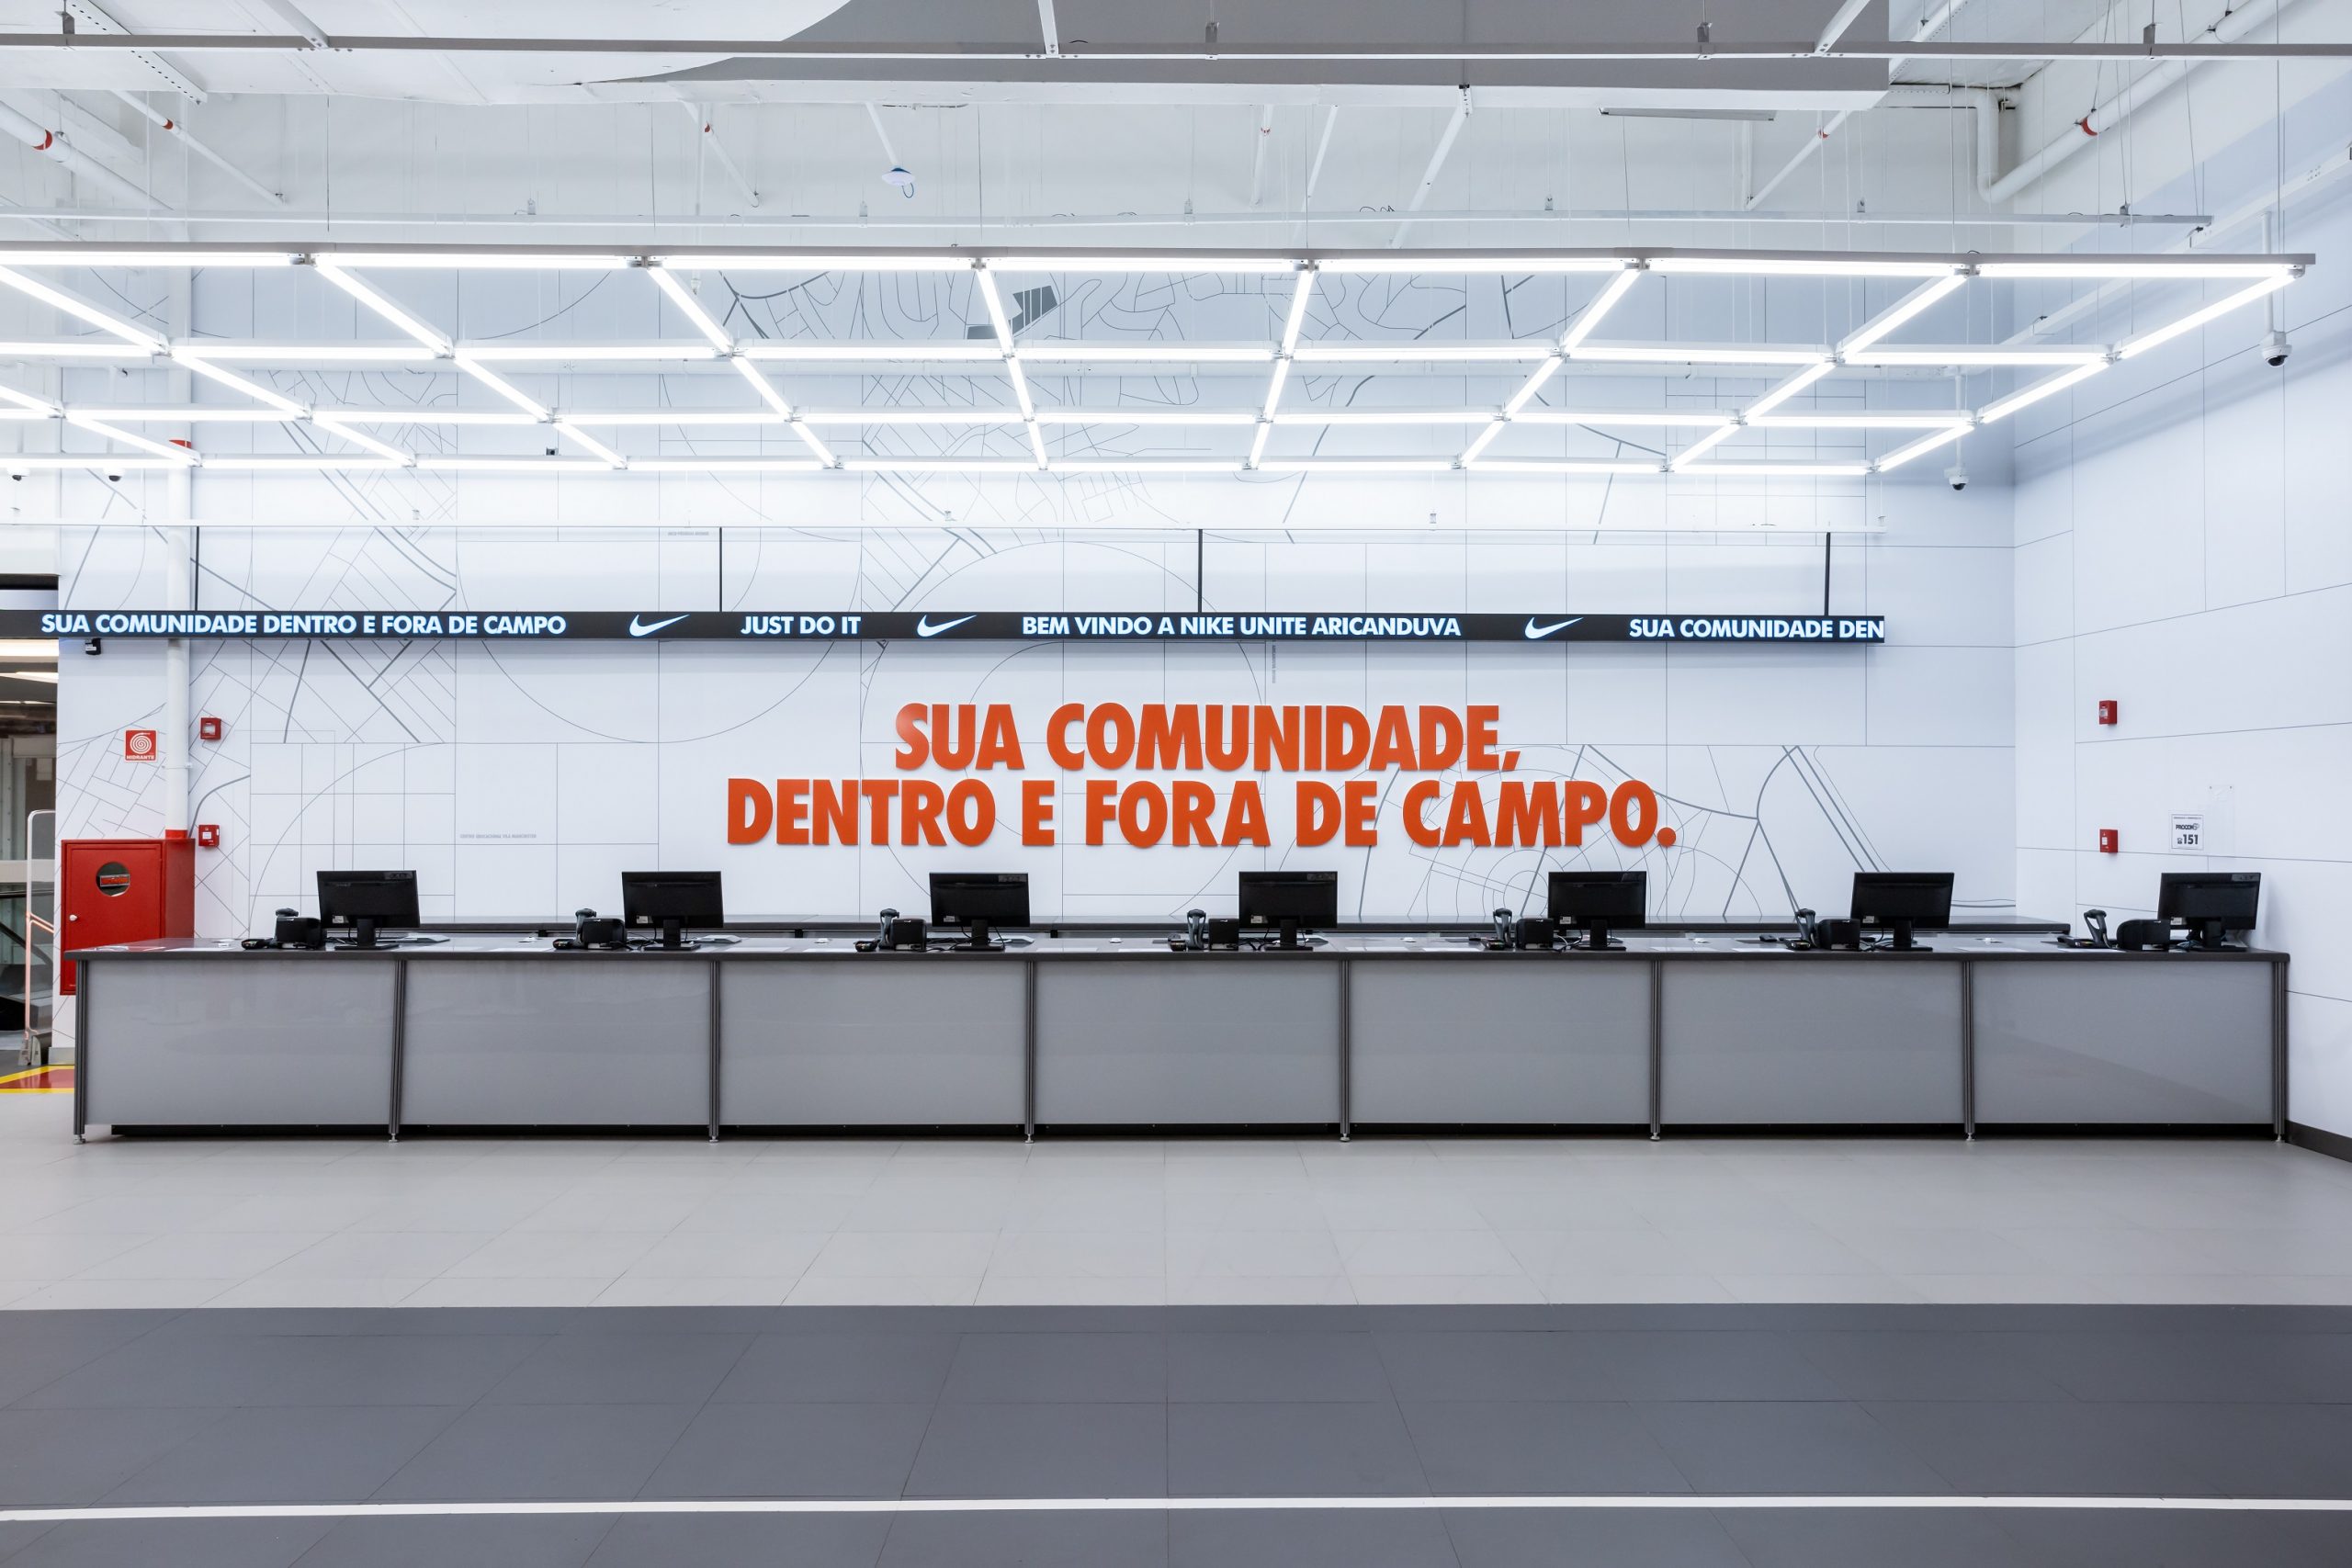 Nike inaugura sua primeira loja com conceito Unite no Brasil -  Mercado&Consumo